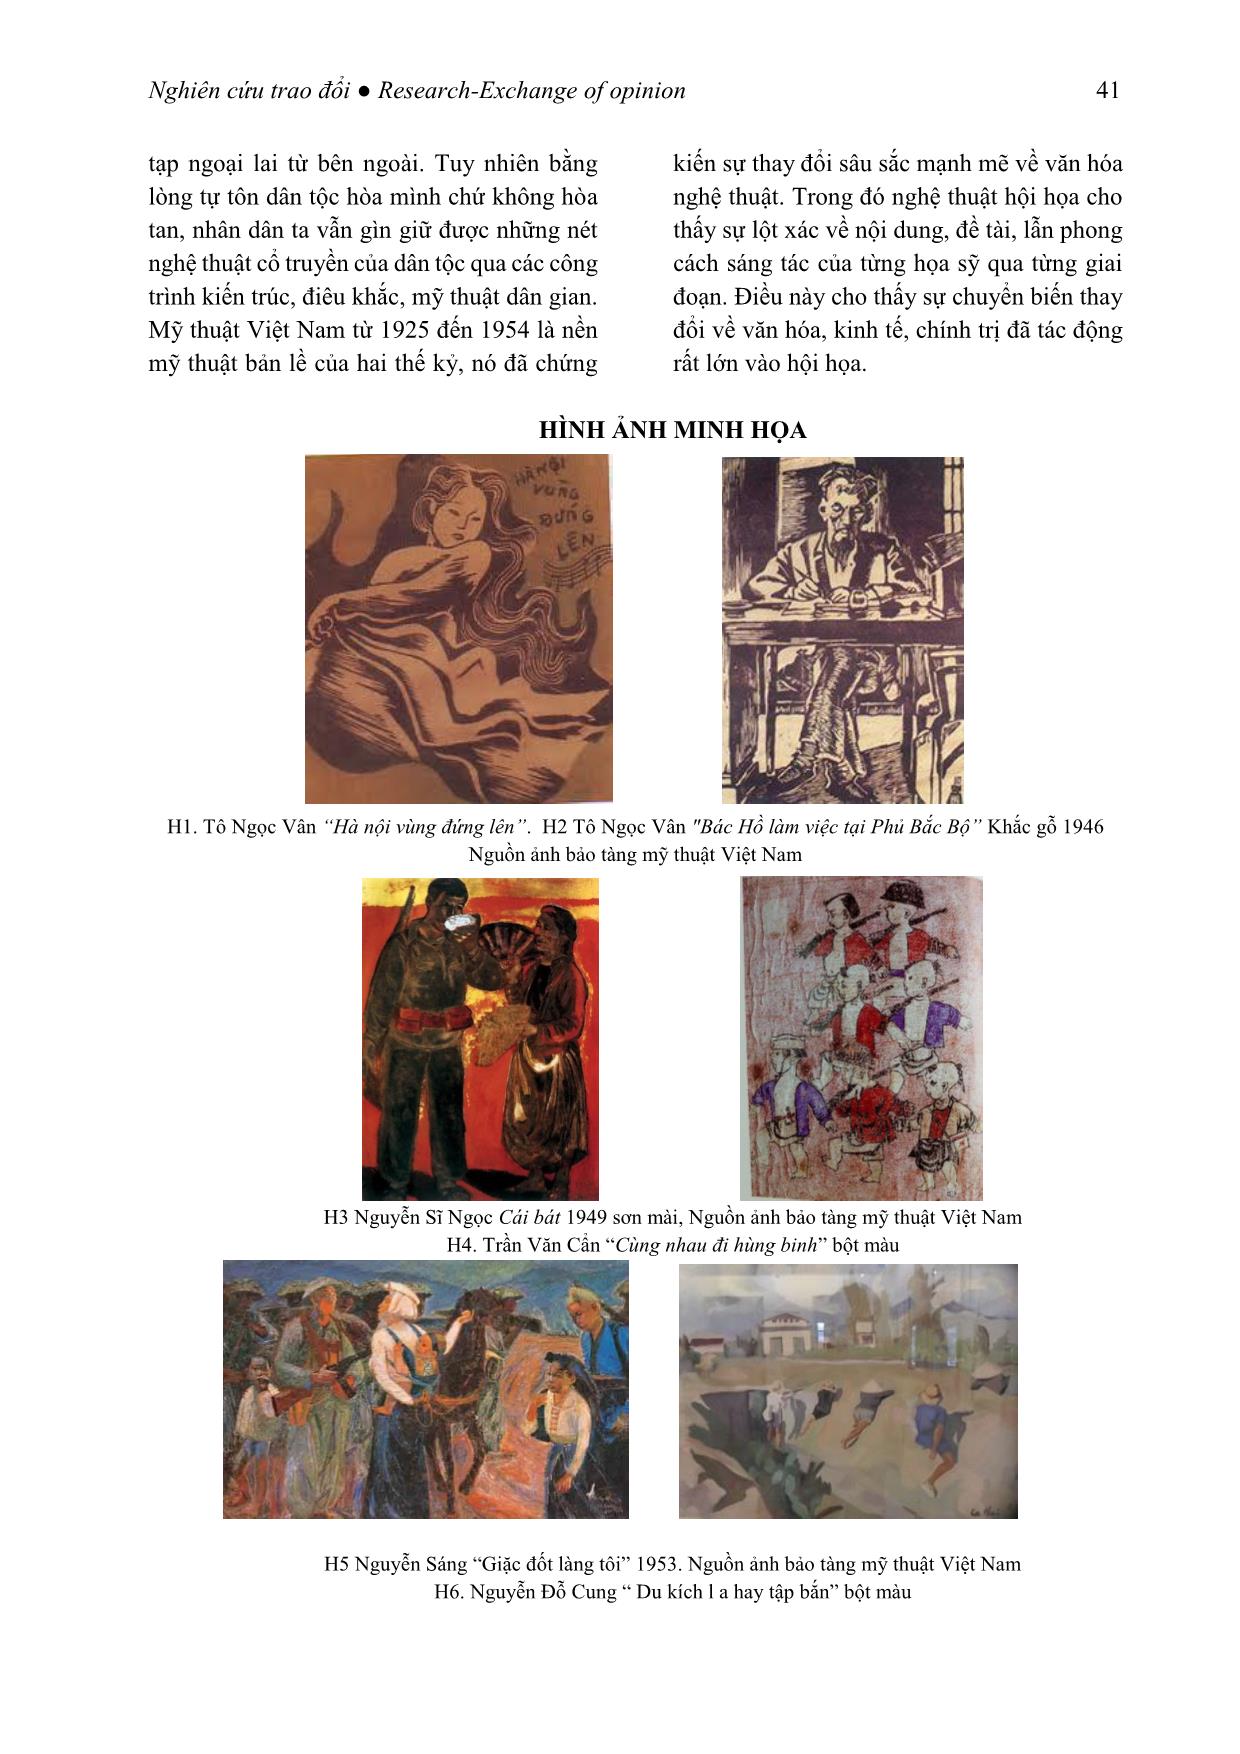 Những tác động từ văn hóa, chính trị làm thay đổi nền hội họa Việt Nam giai đoạn 1945 - 1954 trang 9